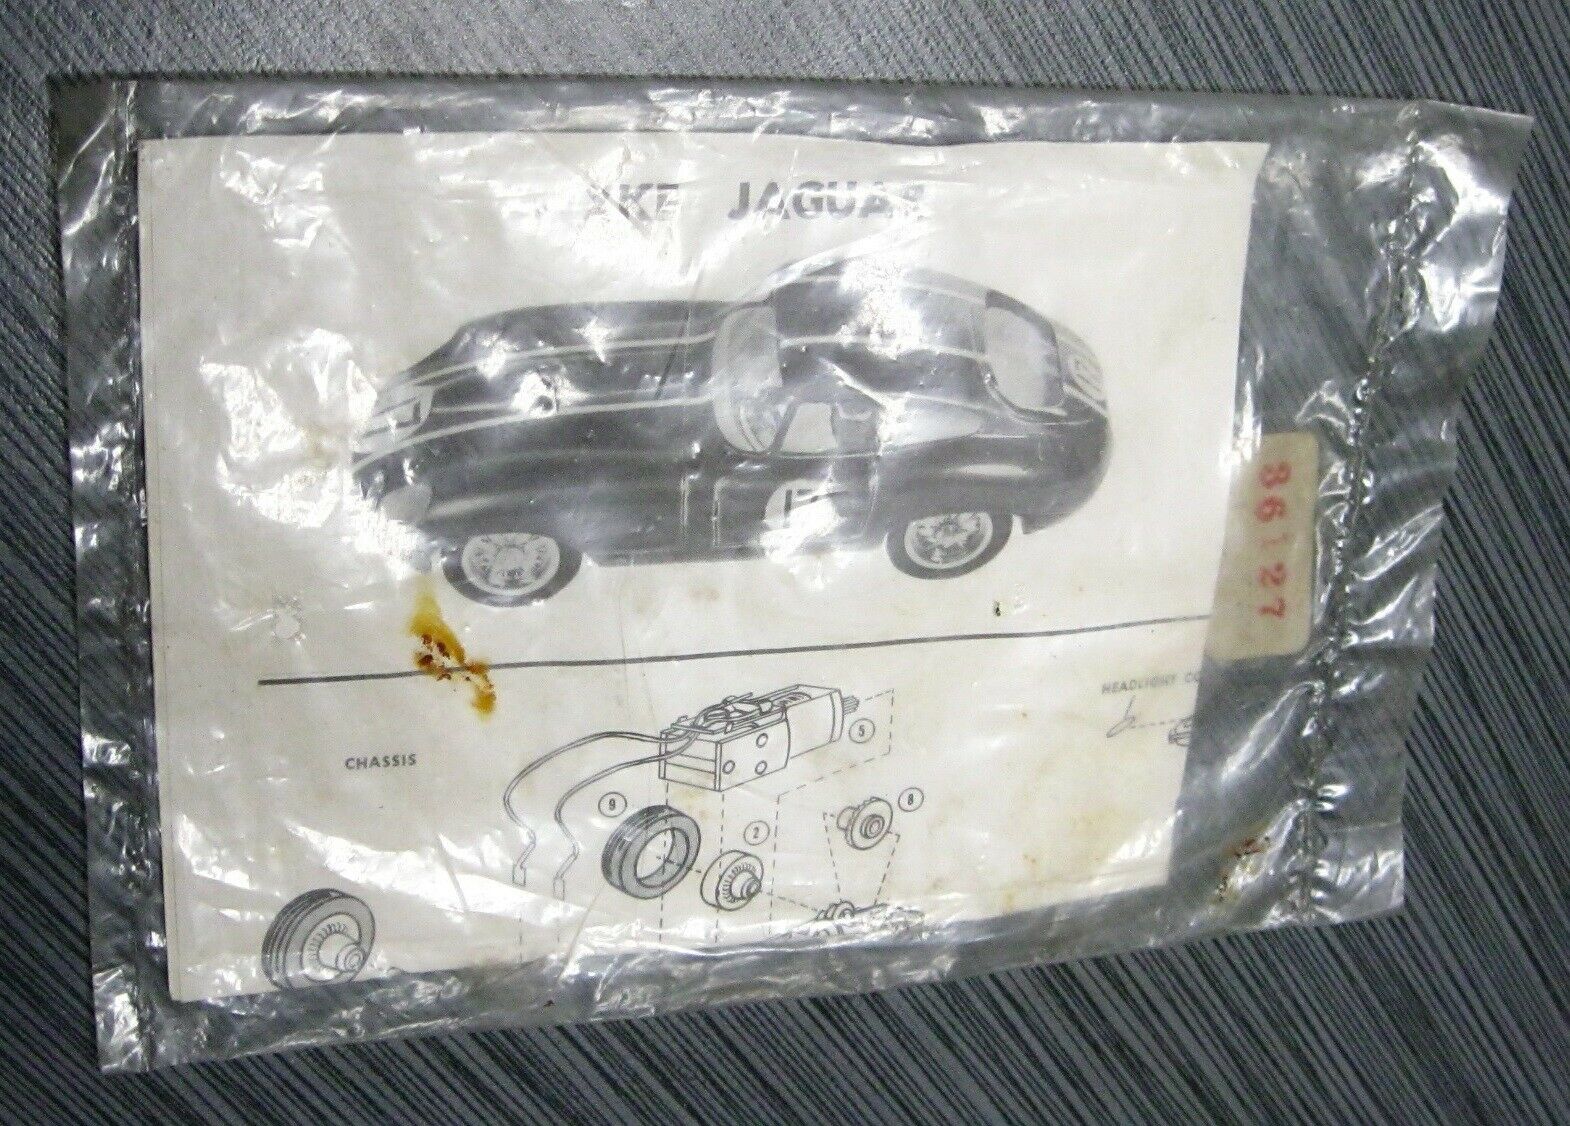 Slot Car Strombecker Jaguar Xke Sealed Instructions 36127 Vintage 1/32 Scale